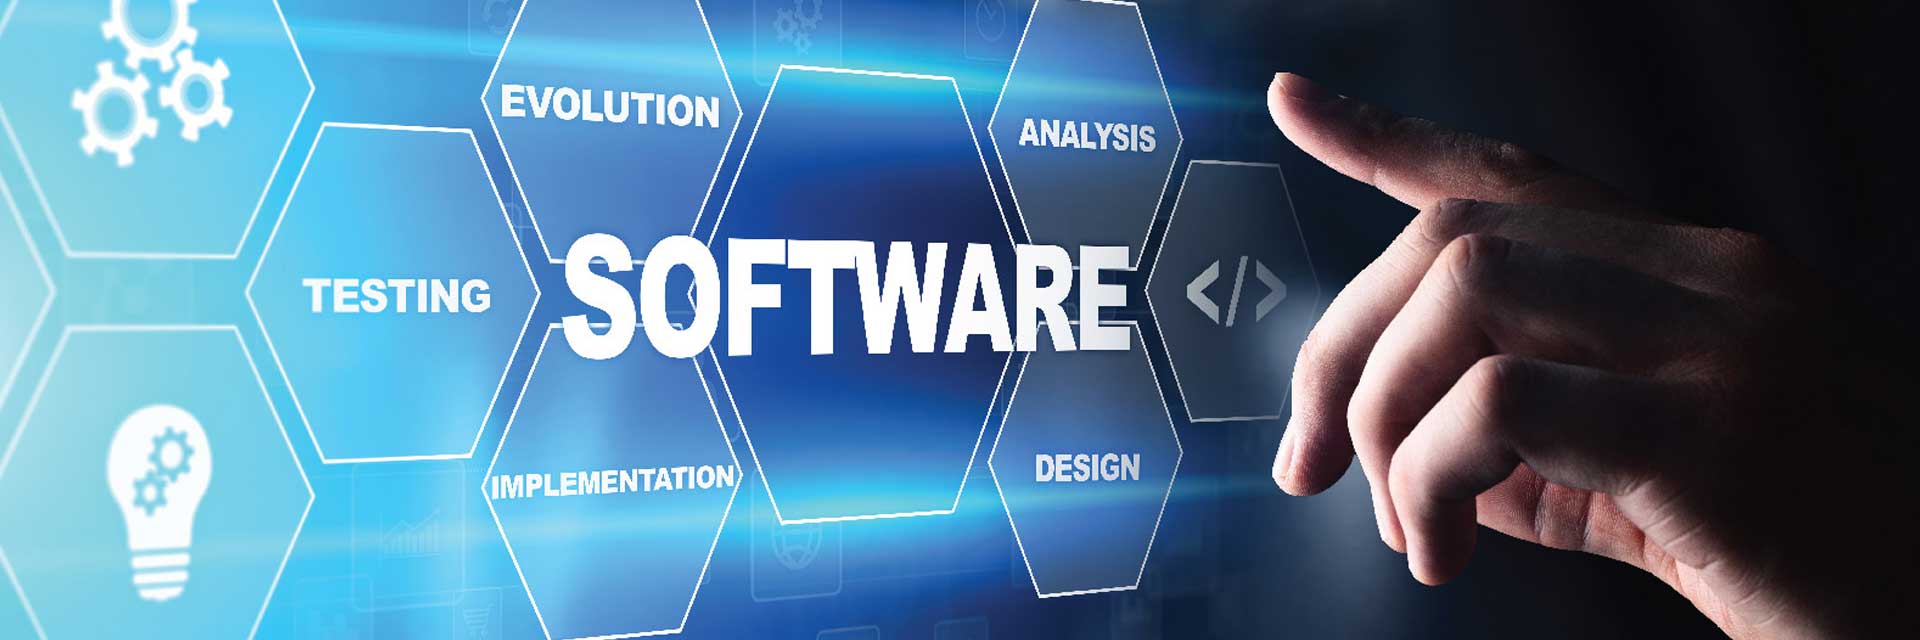 Software Company